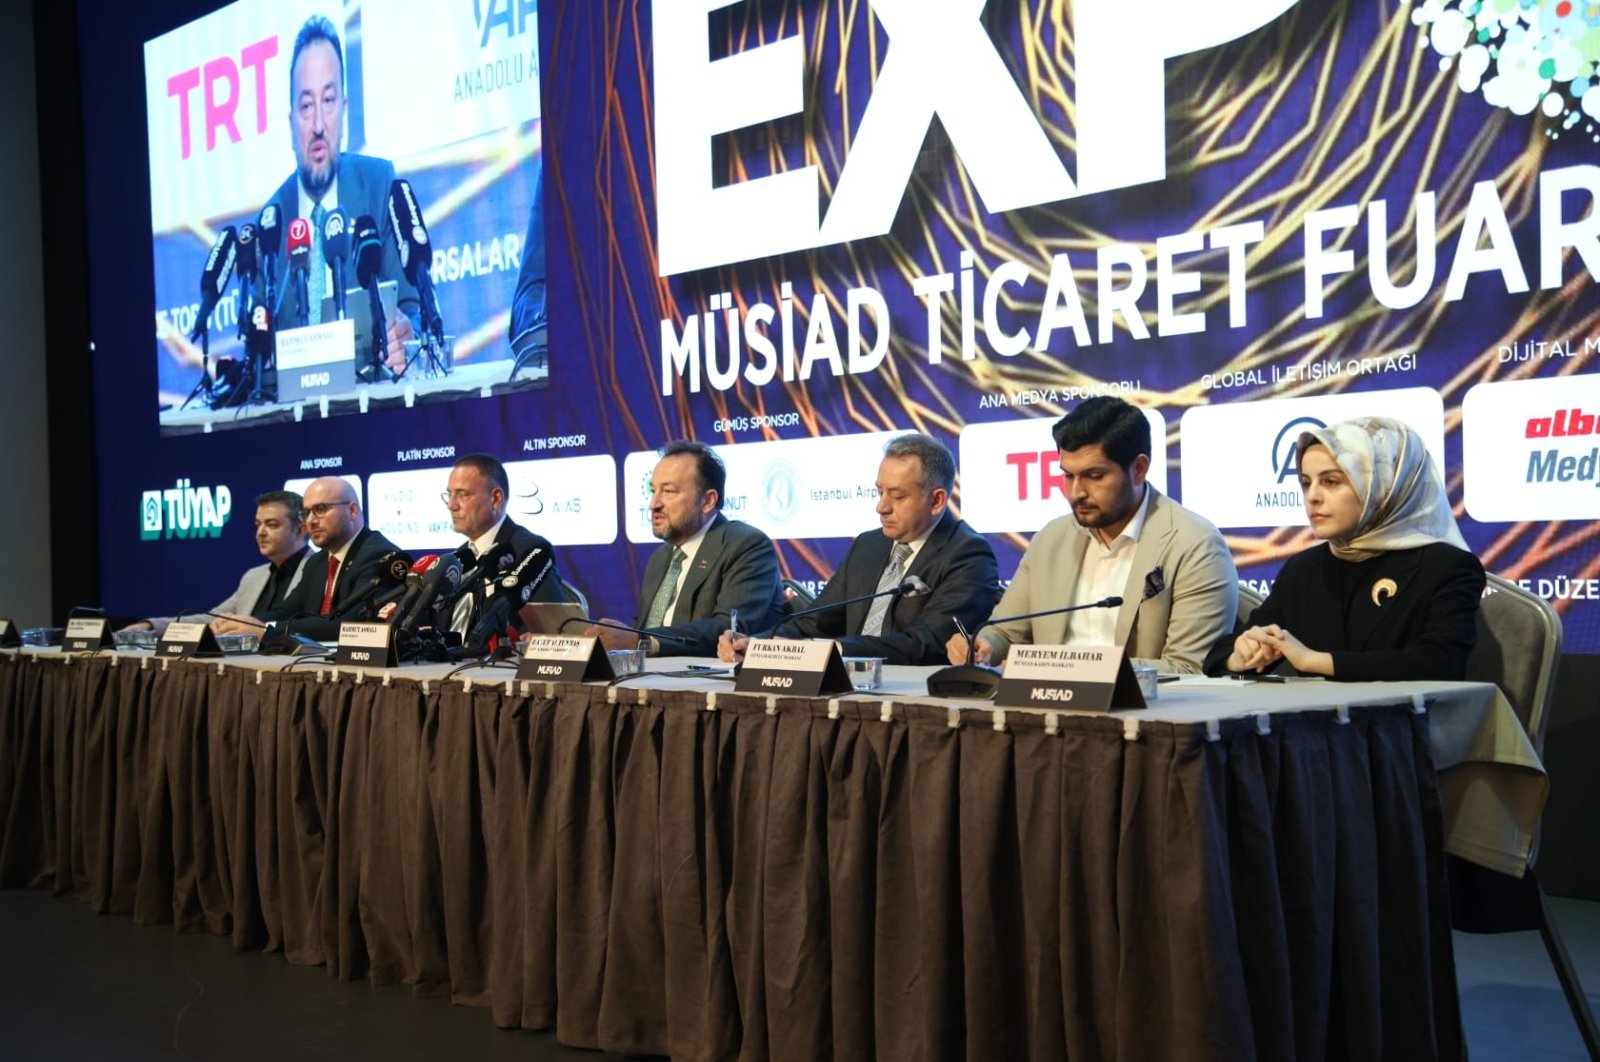 Ana ticaret fuarı MÜSİAD EXPO, Türk ve uluslararası iş çevrelerini bir araya getiriyor